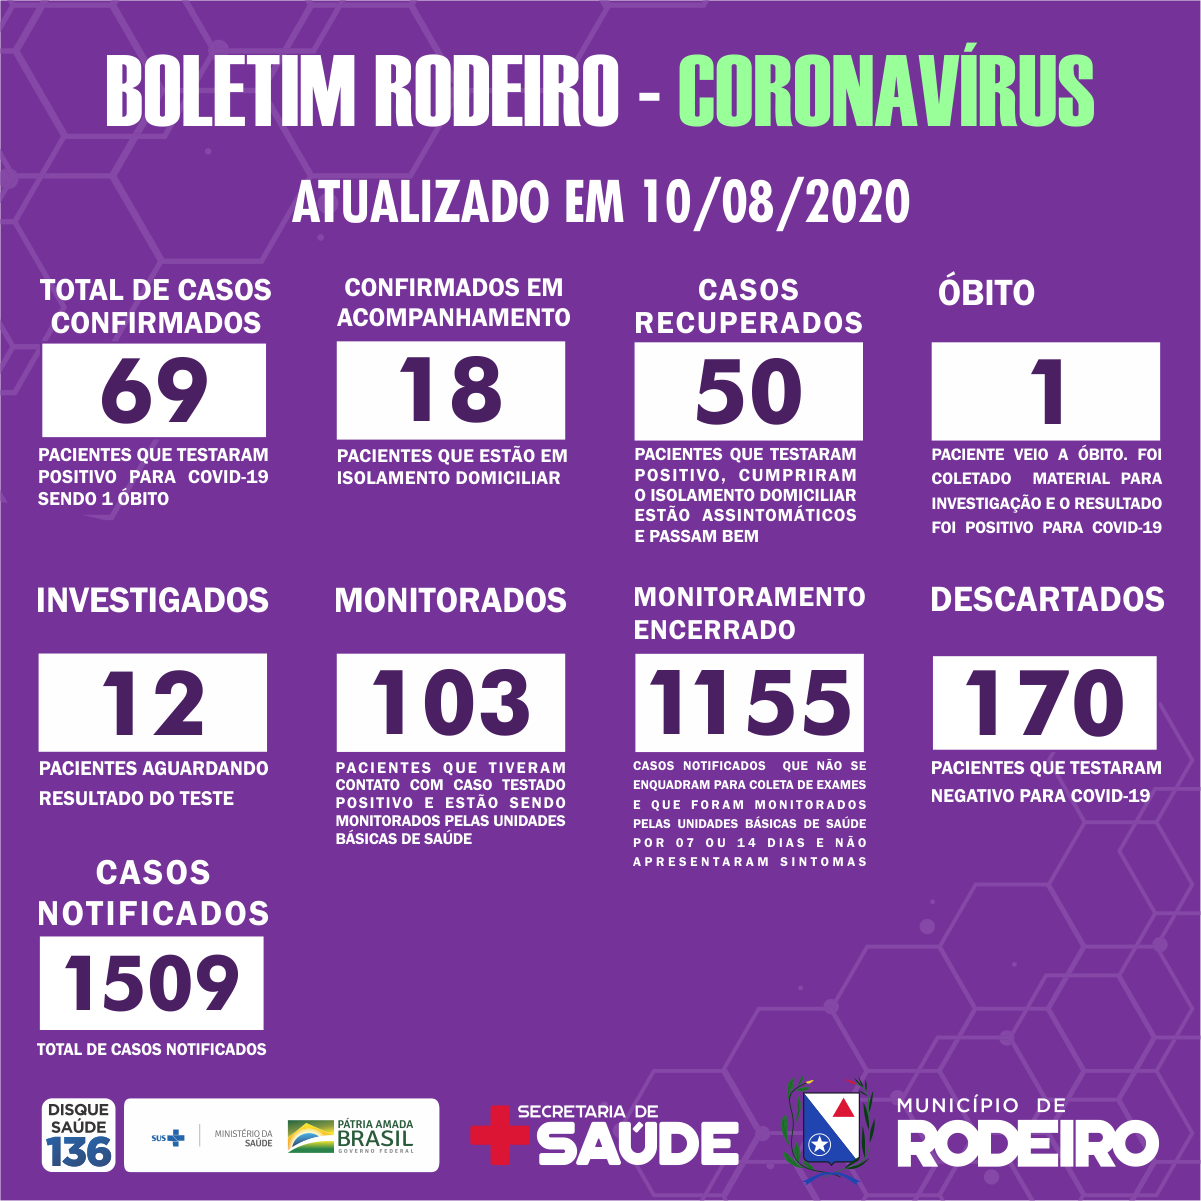 Boletim Epidemiológico do Município de Rodeiro sobre coronavírus, atualizado em 10/08/2020.